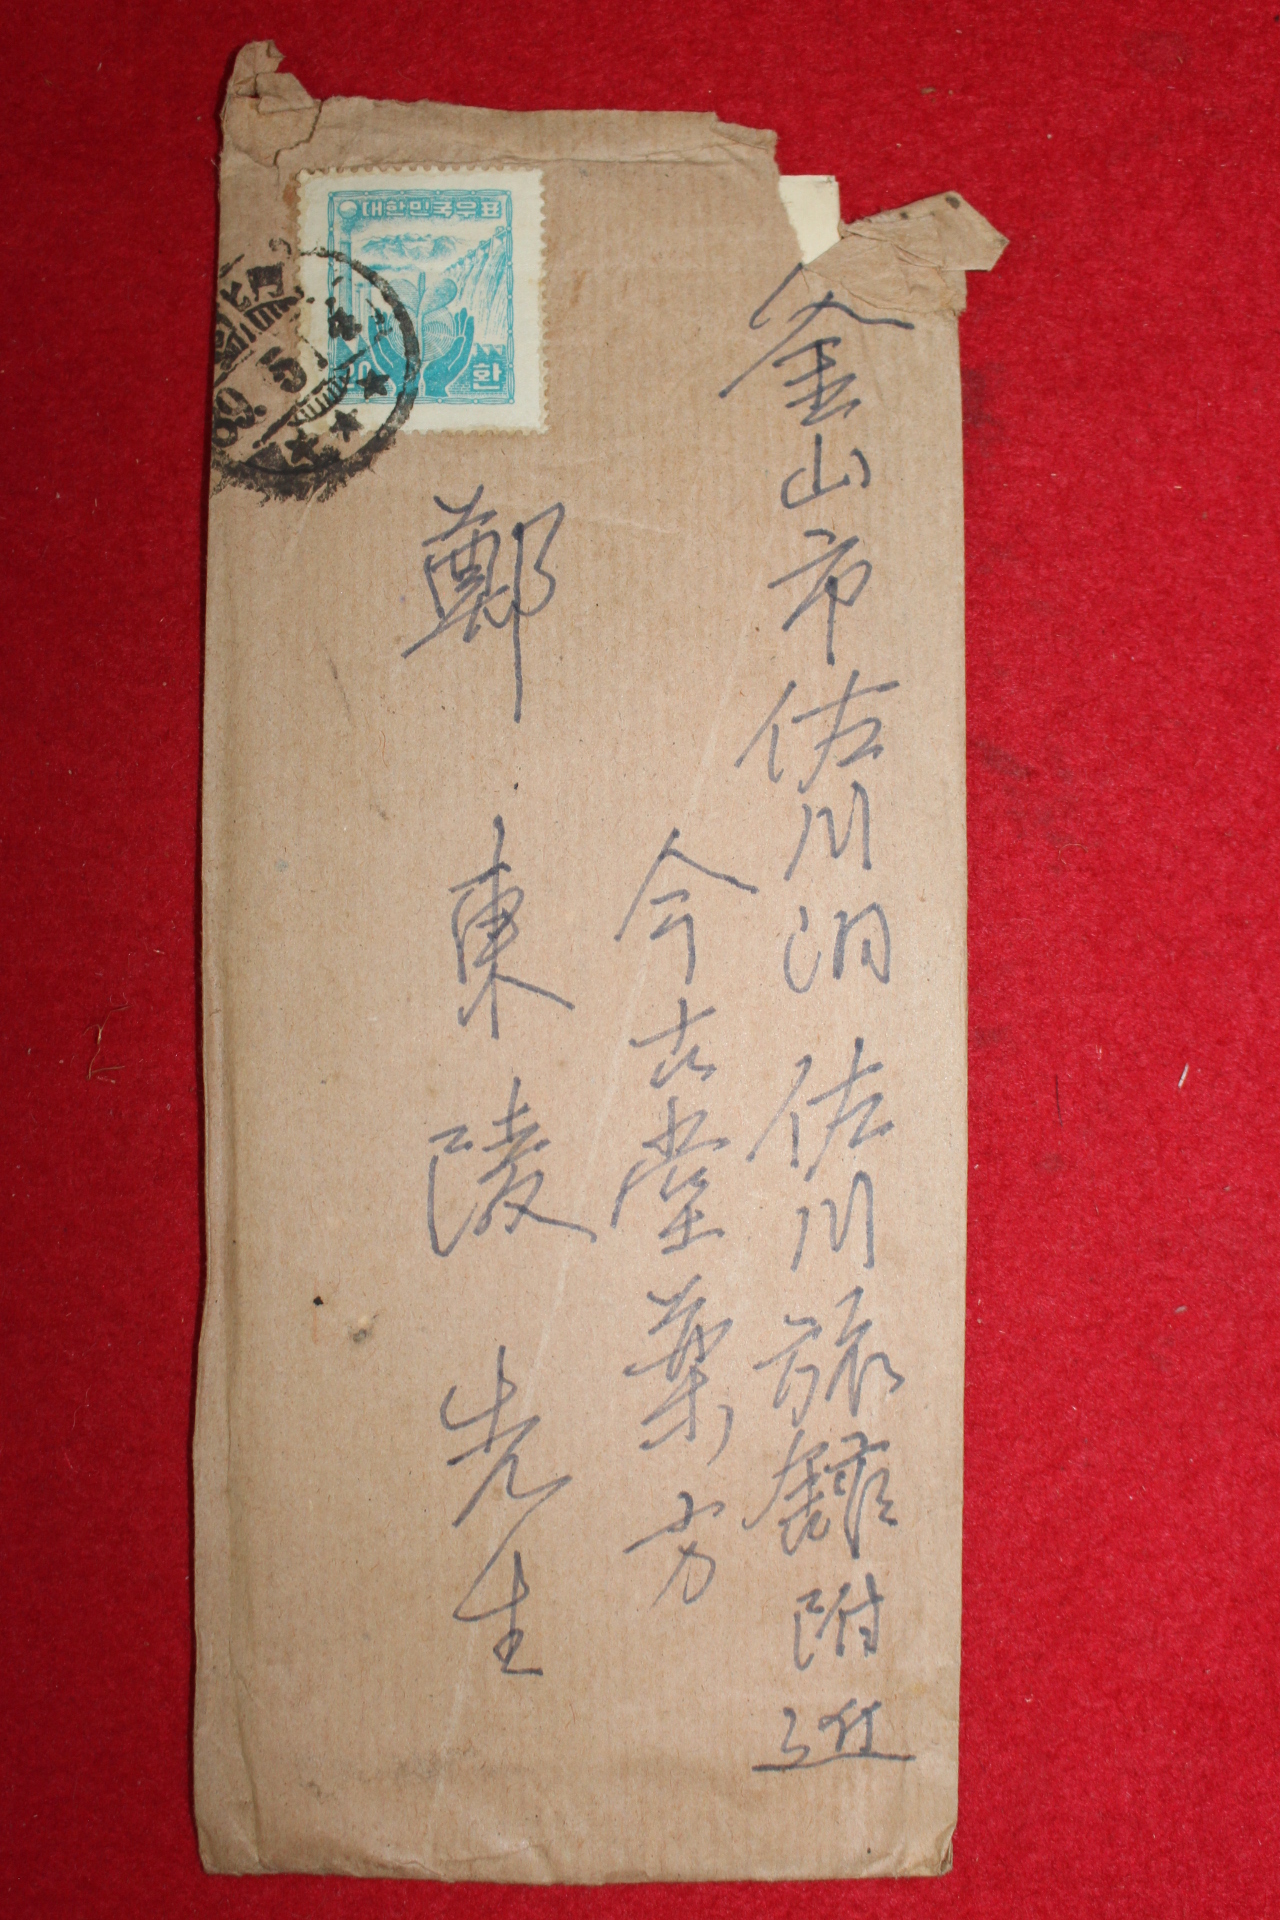 46-1956년 광복군참모장 독립운동가 이범석(李範奭)장군 우편사용실체(입후보 전단지수록)